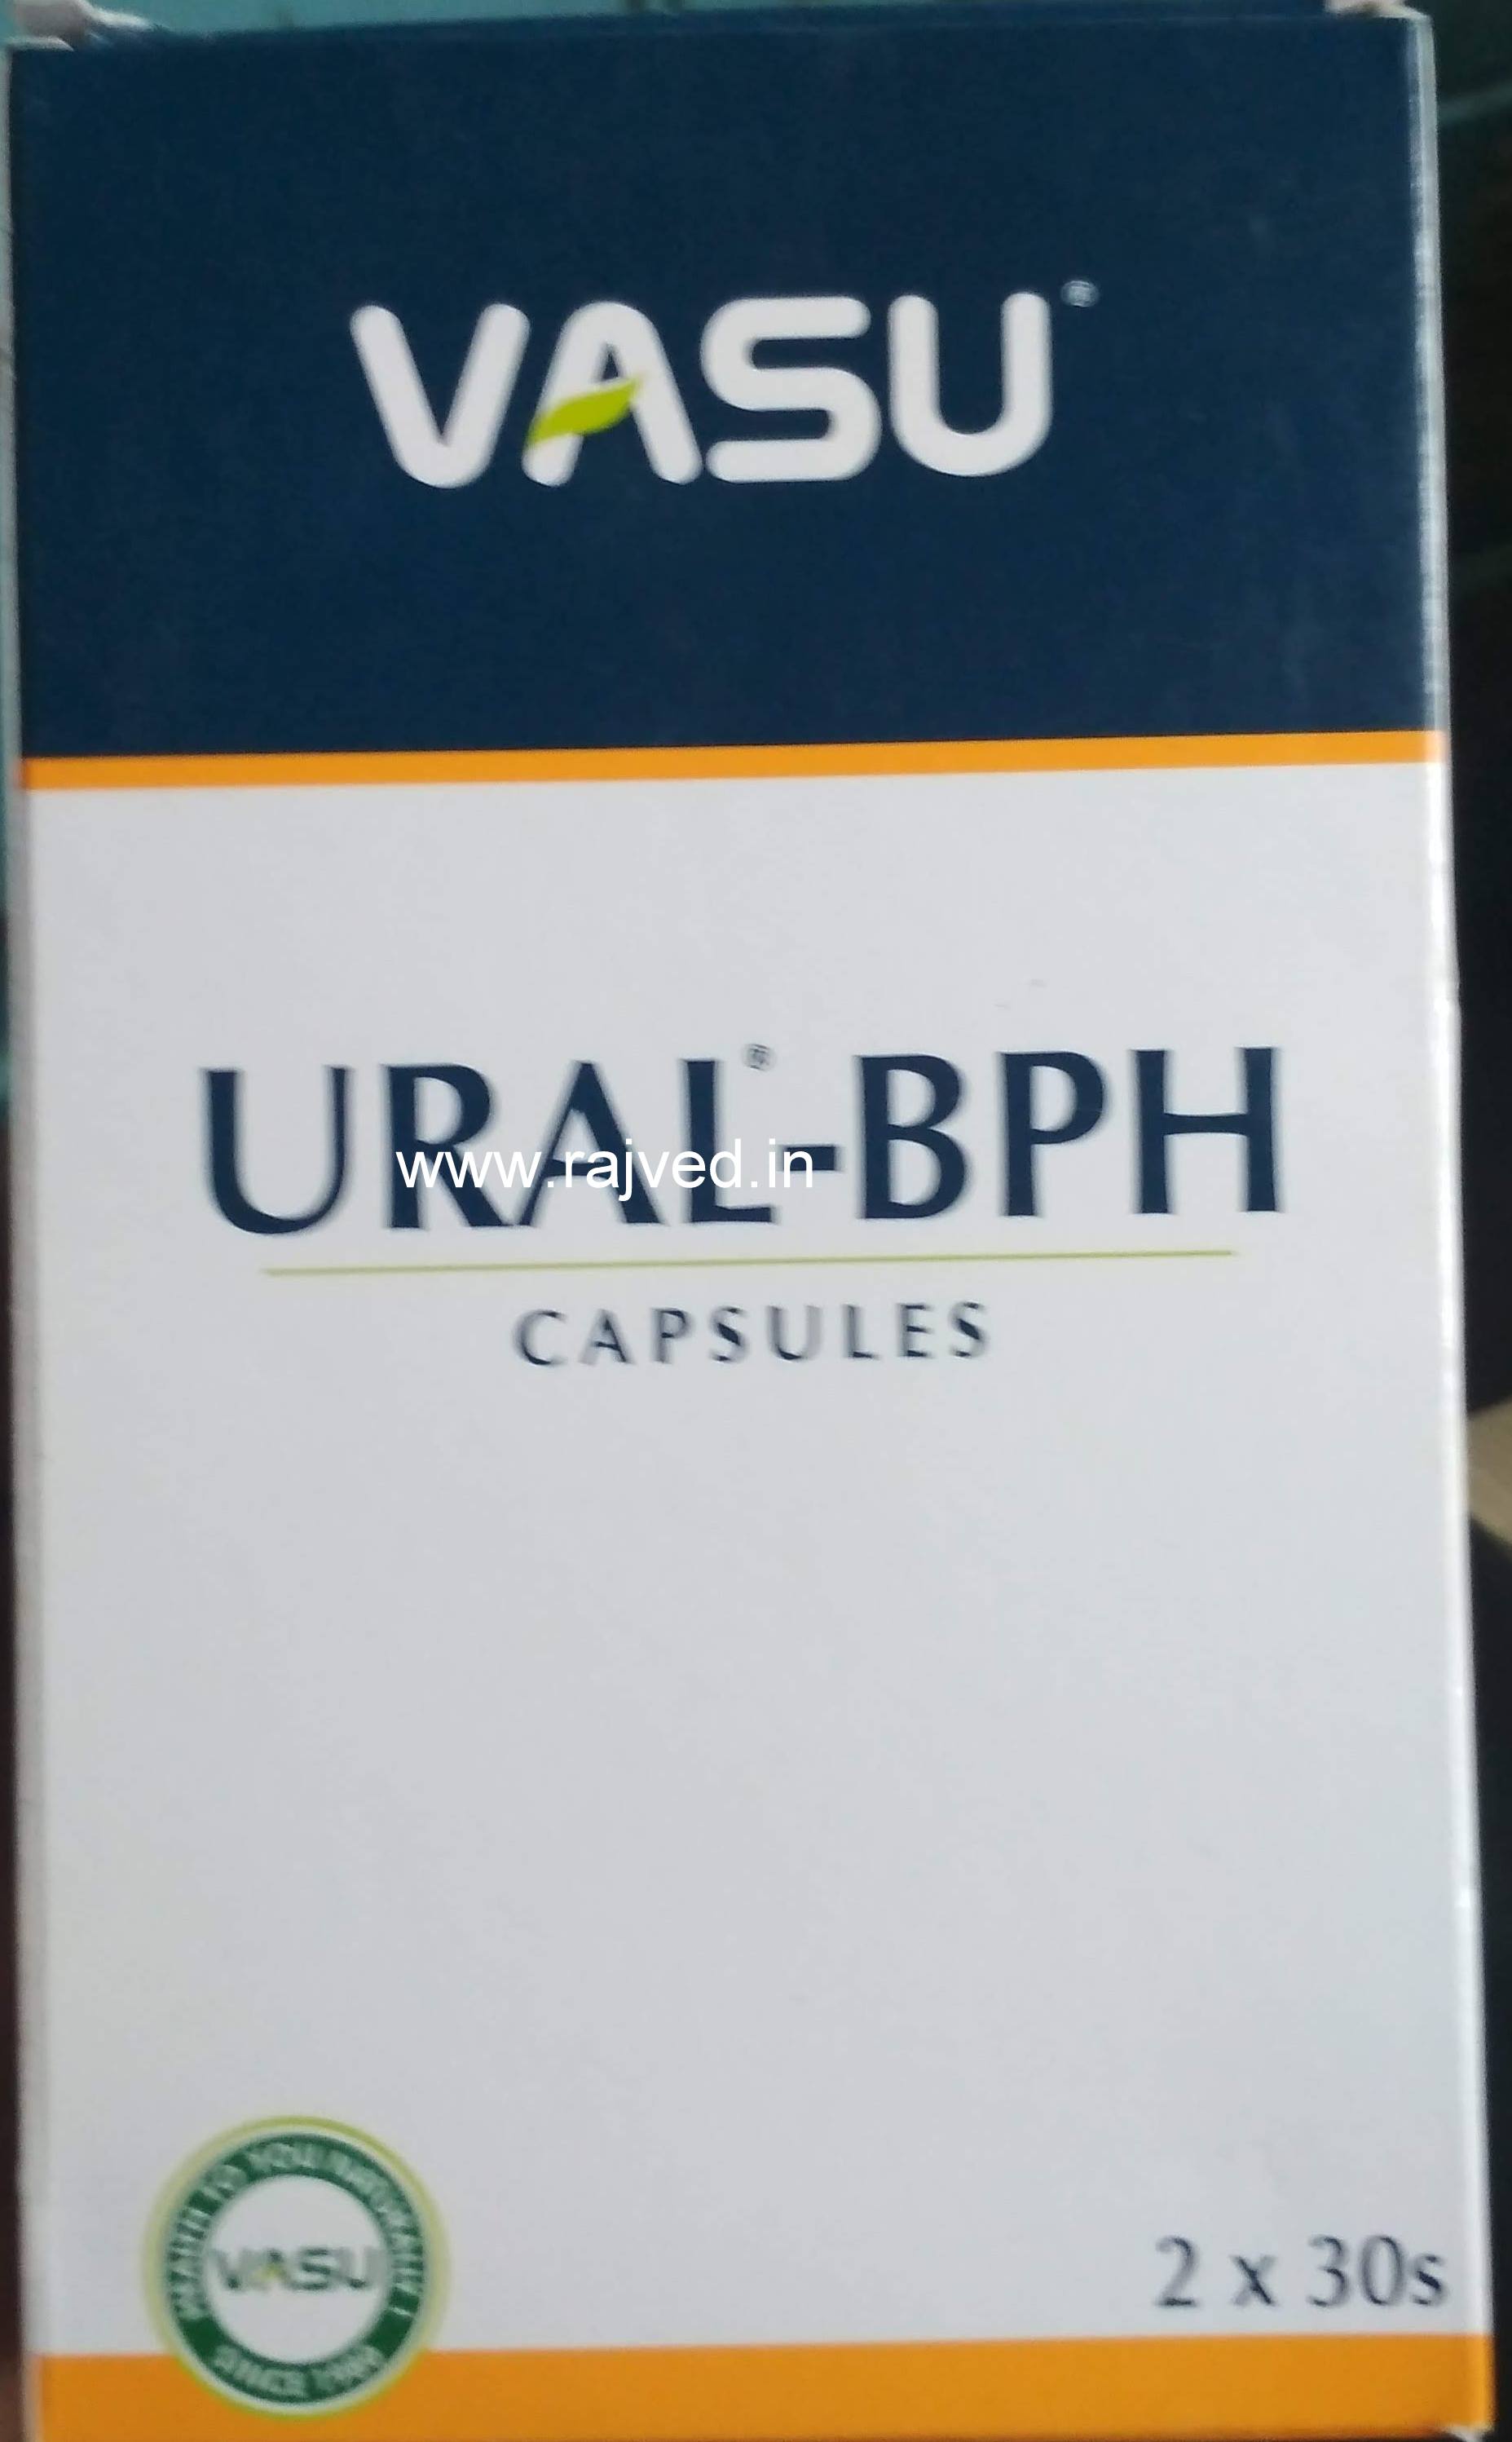 Ural-BPH capsule 60cap Vasu Pharmaceuticals